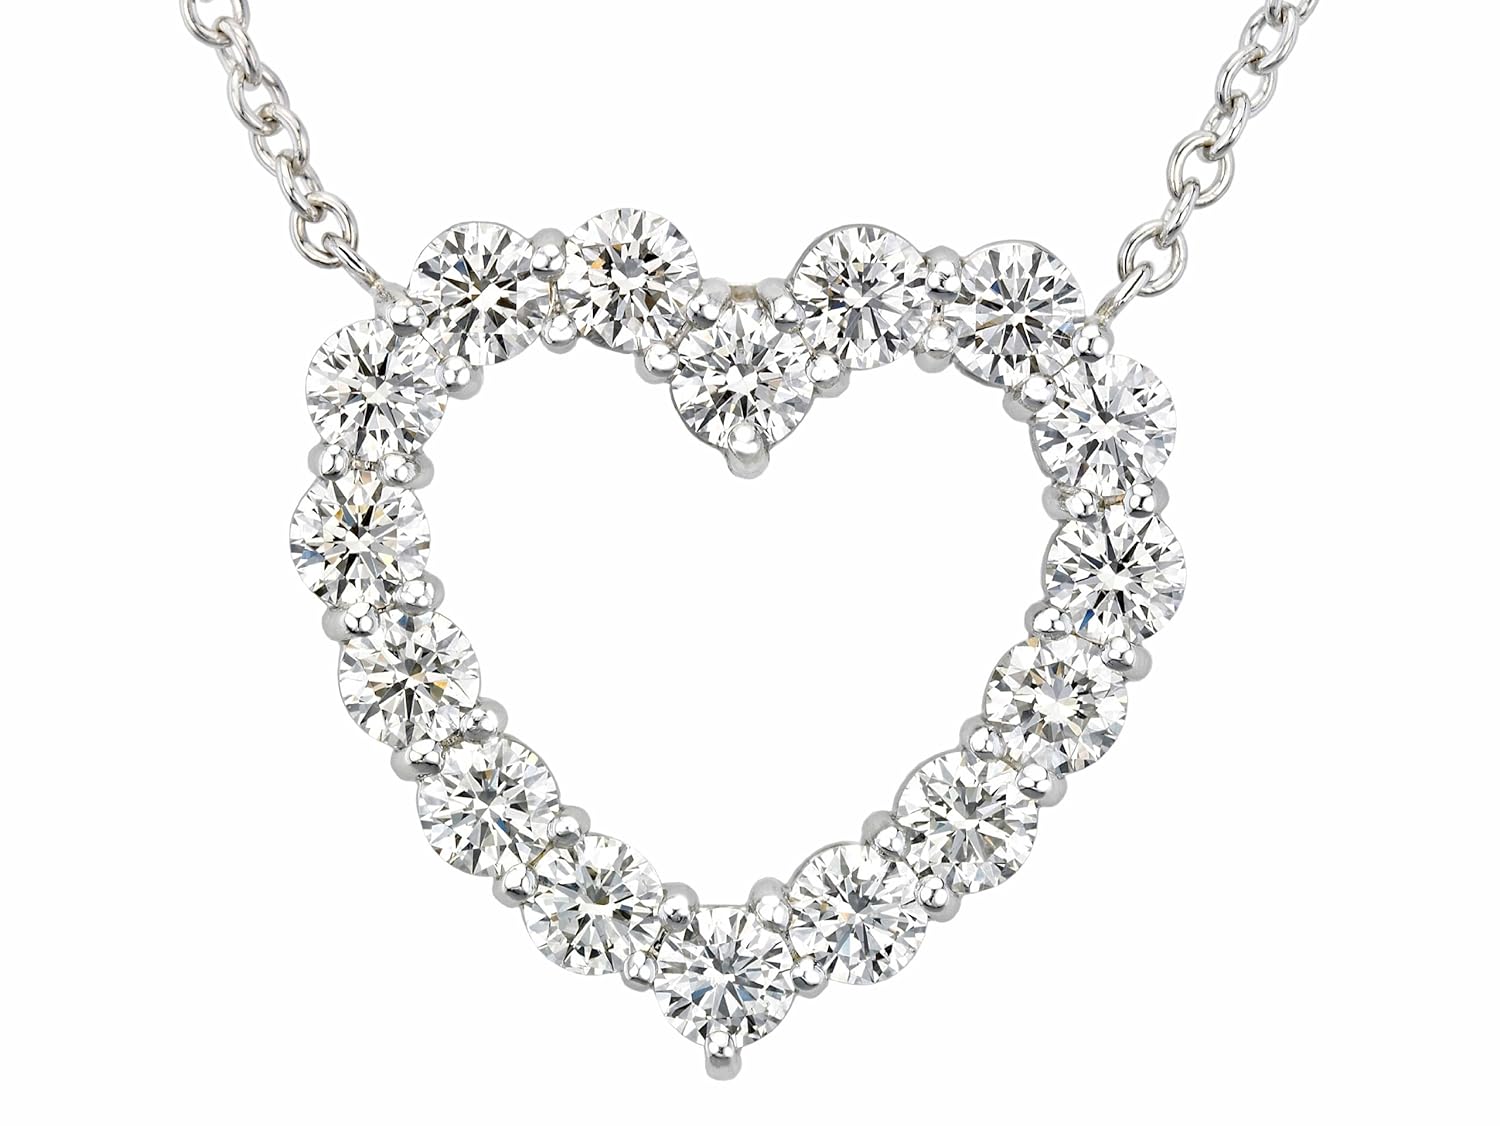 好看的钻石项链款式有哪些好看的钻石项链款式-第1张图片-翡翠网